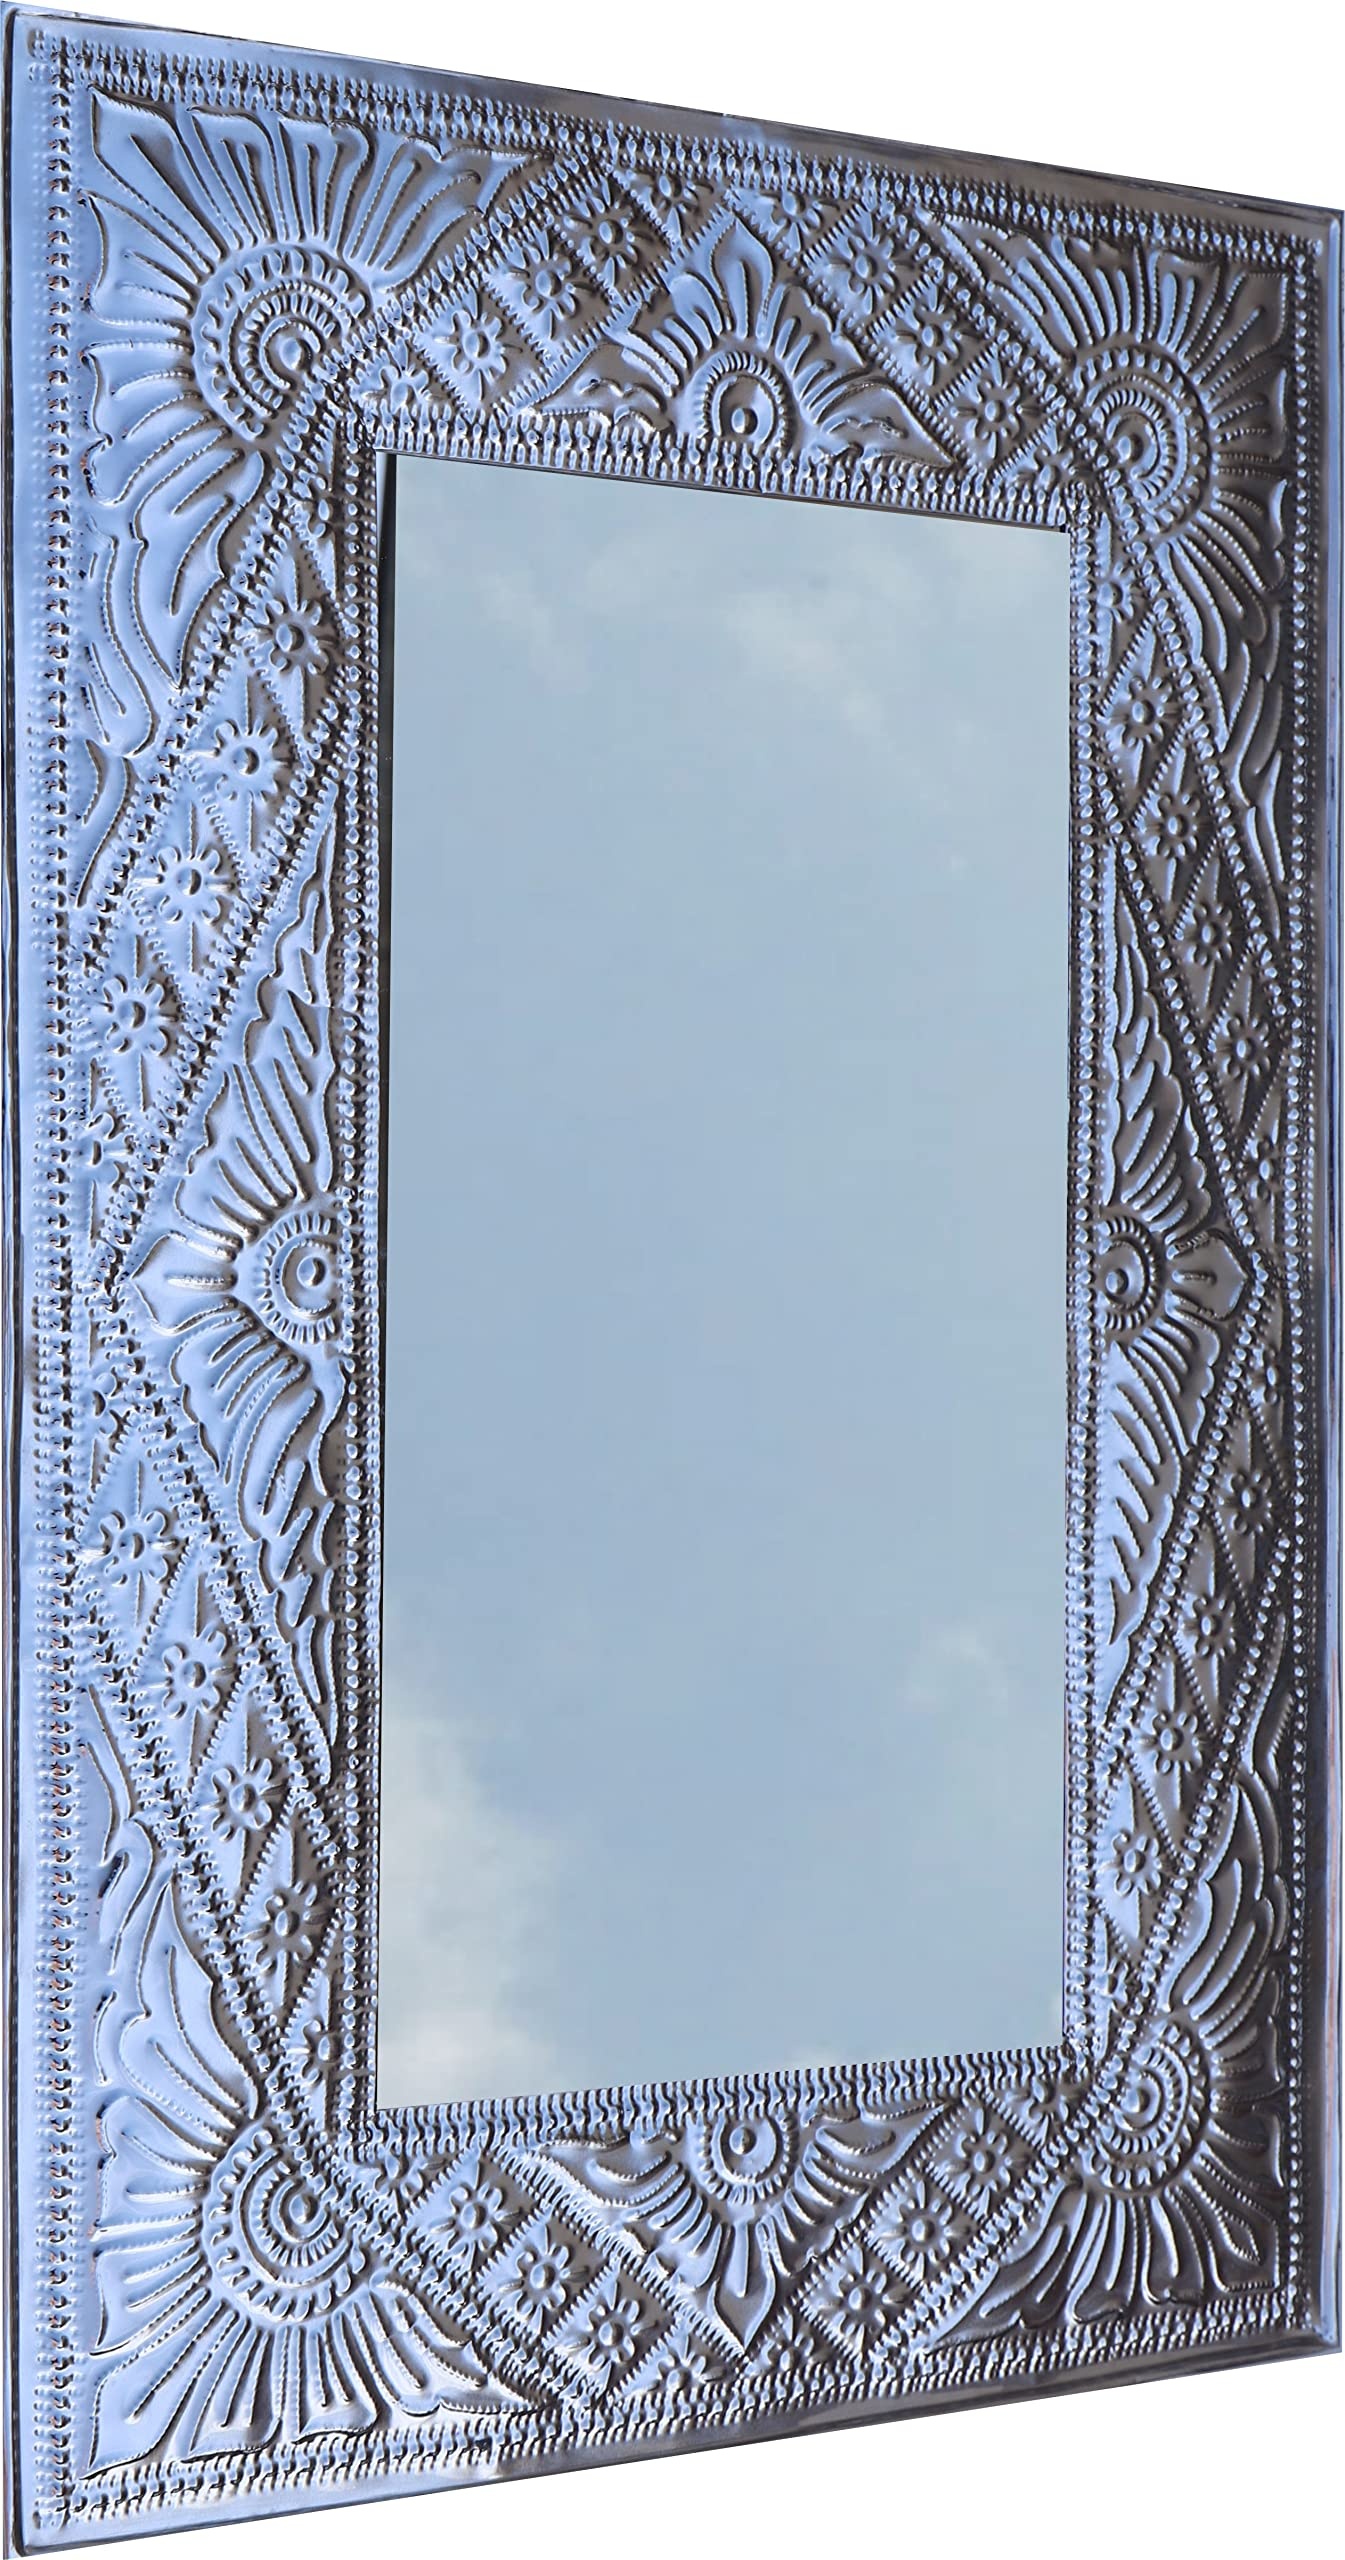 GURU SHOP Spiegel mit Handgeprägtem Rahmen aus Aluminium - Modell 3 Silber, Weiß, 71x48x1 cm, Spiegel